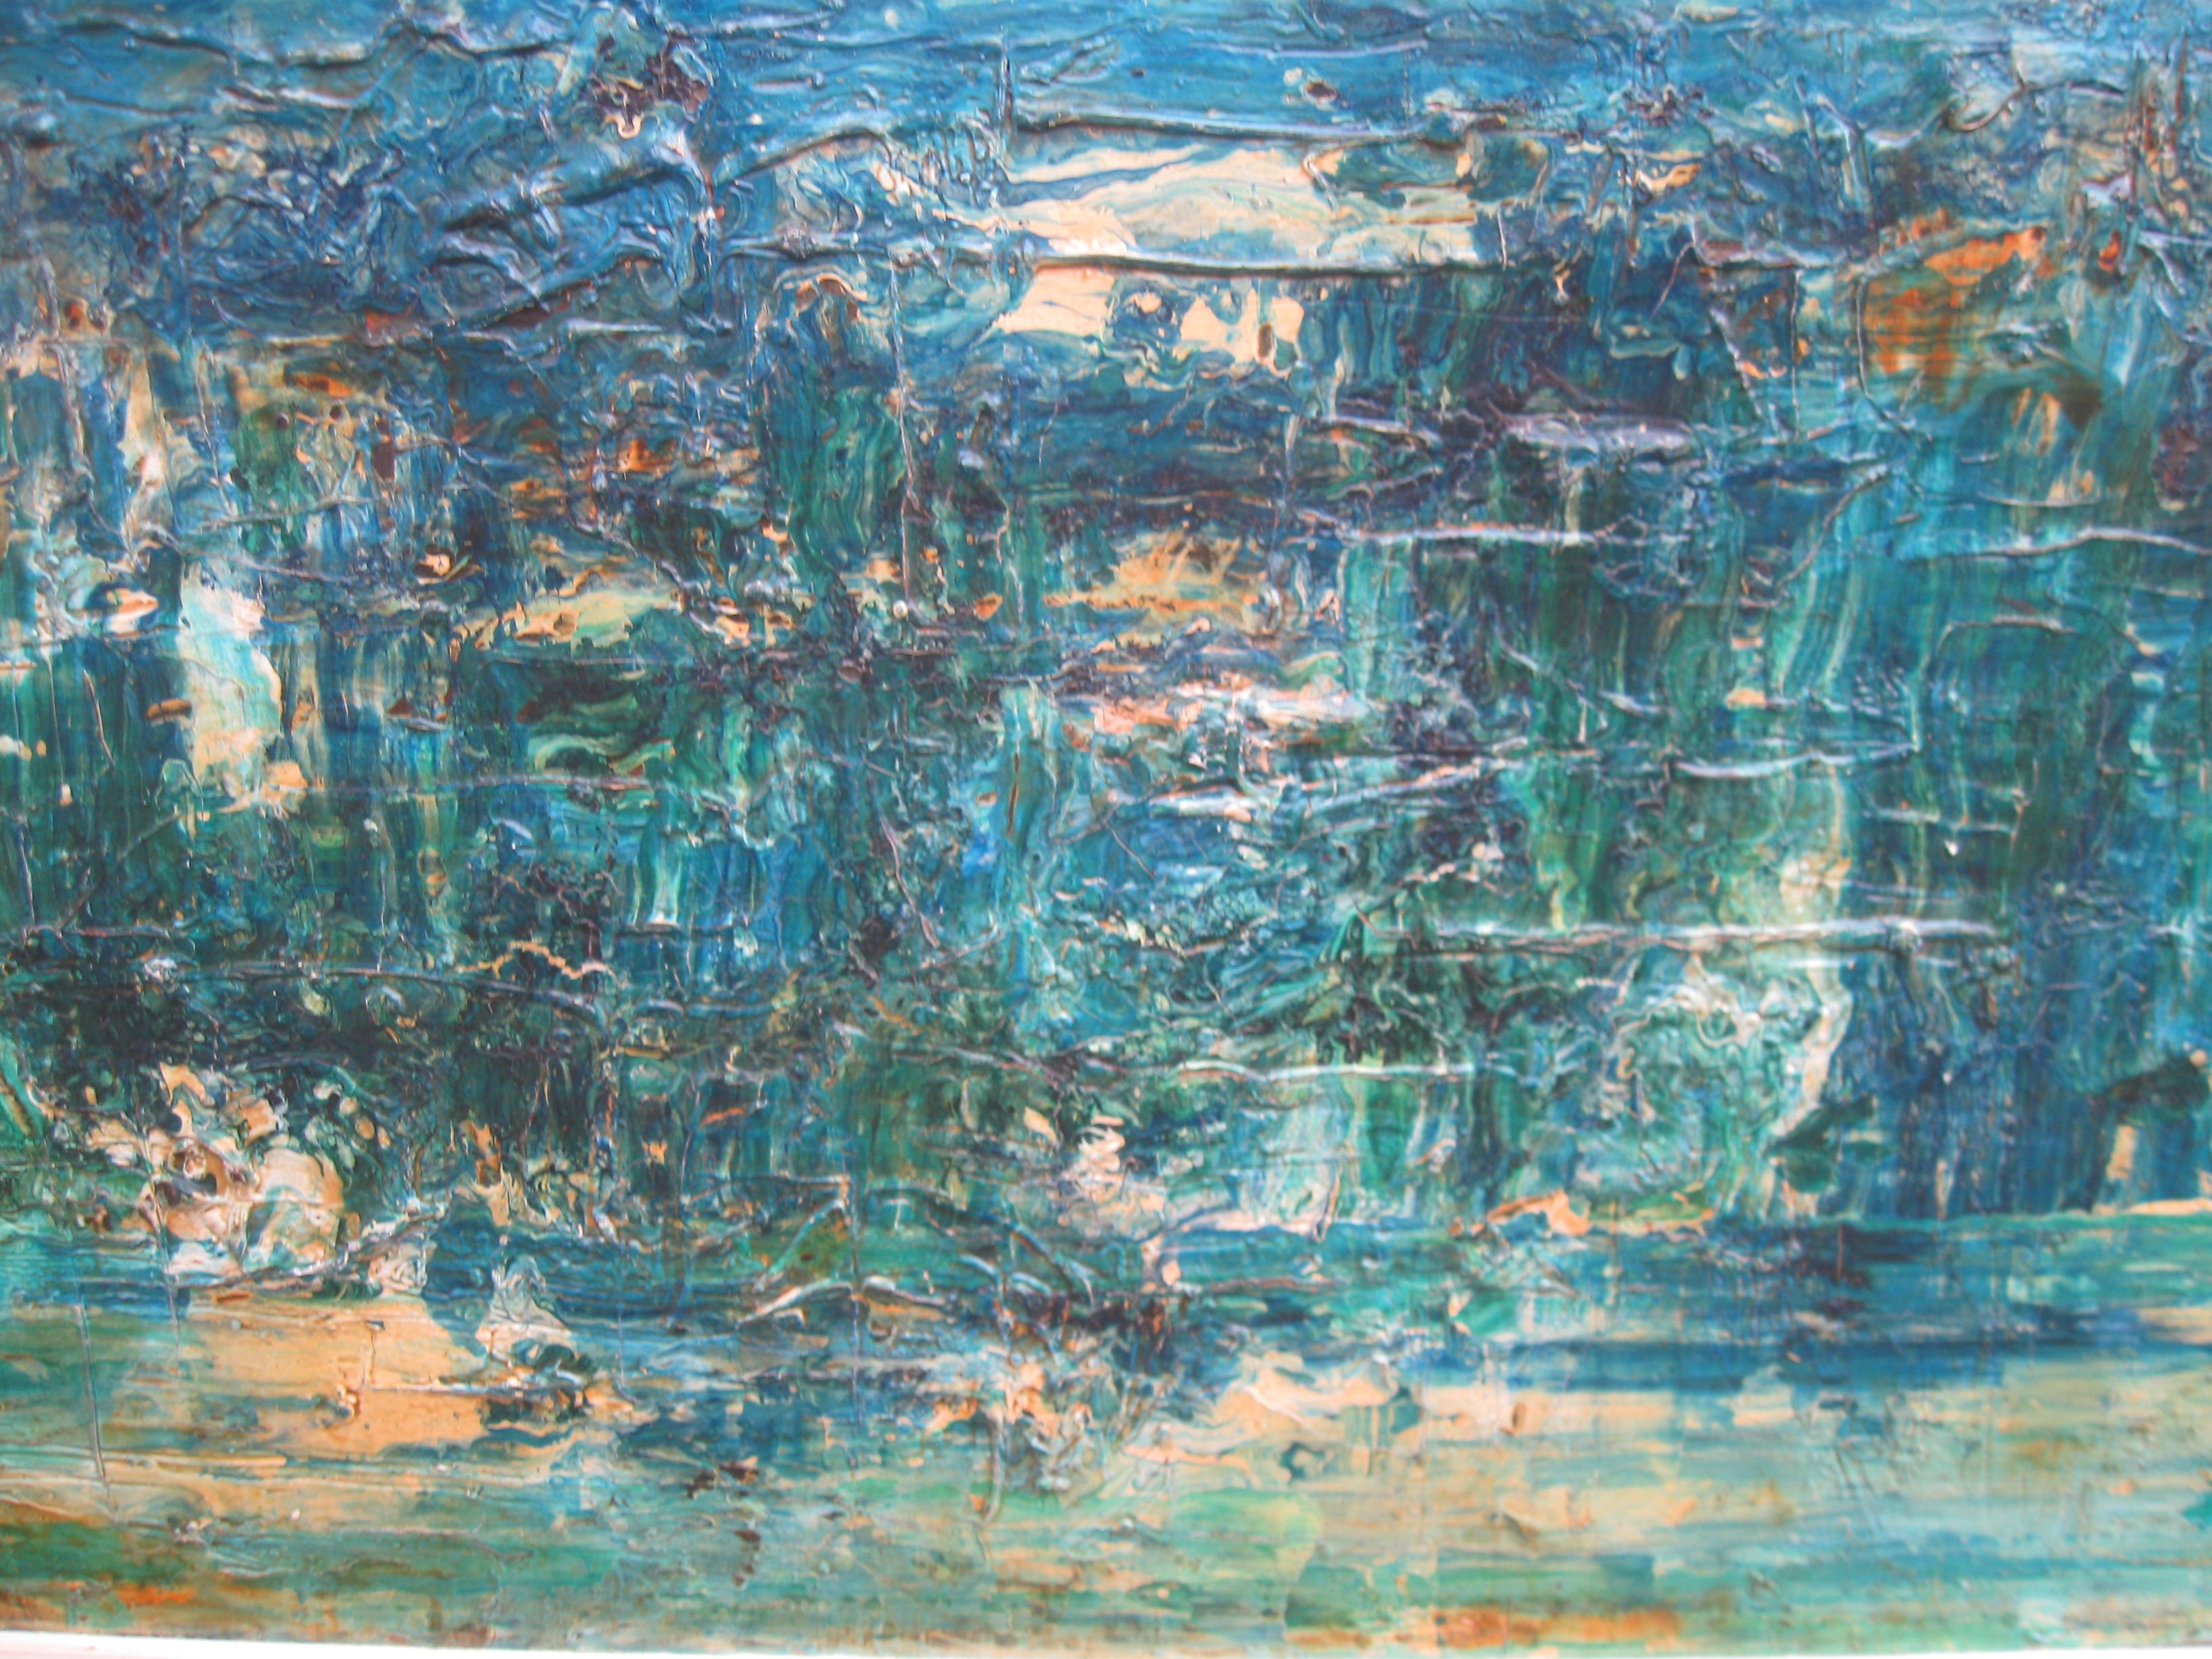 Grande huile expressionniste abstraite du XXe siècle, datant d'environ 1975 - Expressionnisme abstrait Painting par Stanley Smith